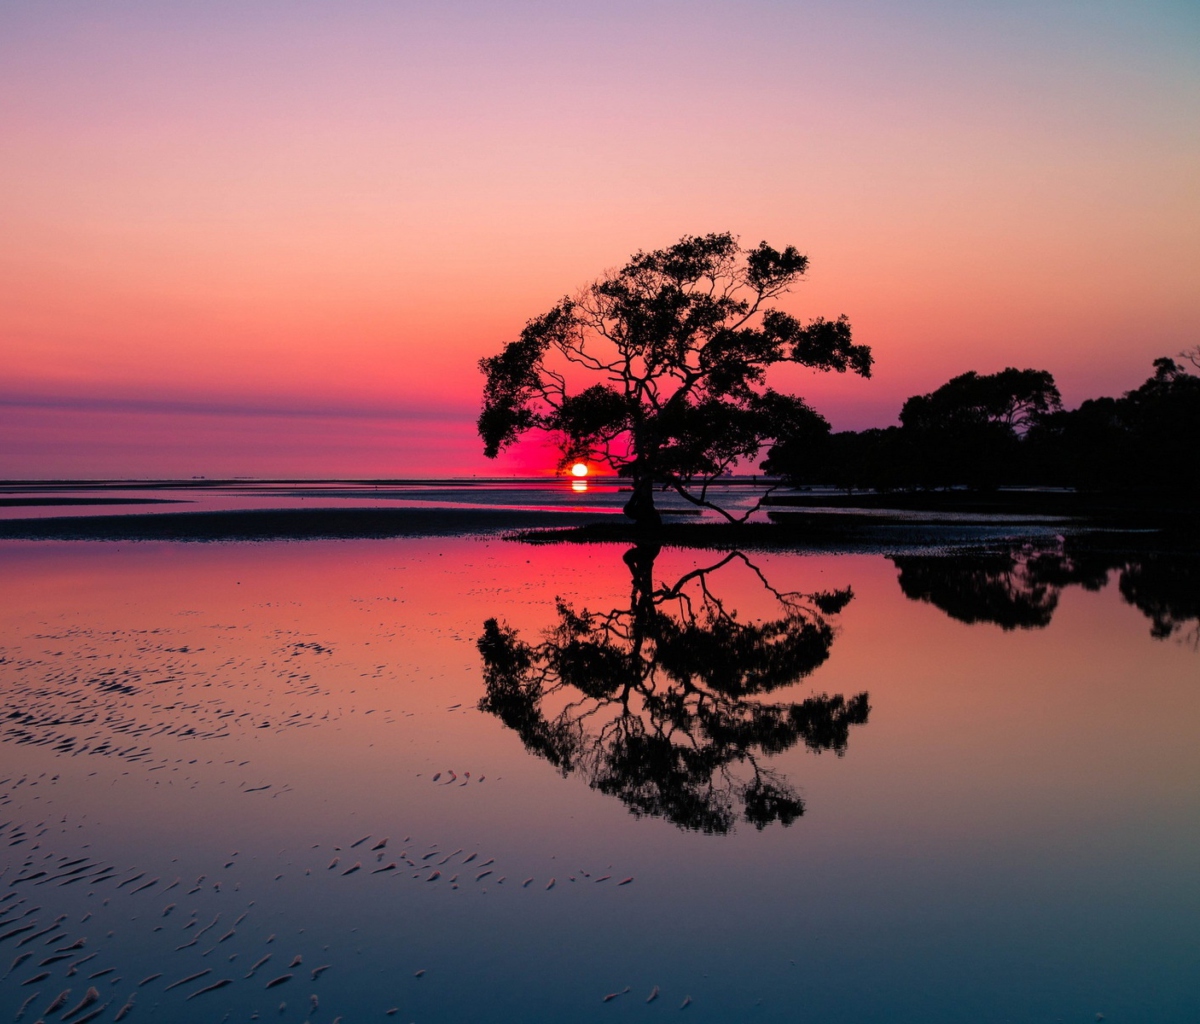 Обои Beautiful Sunset Lake Landscape 1200x1024